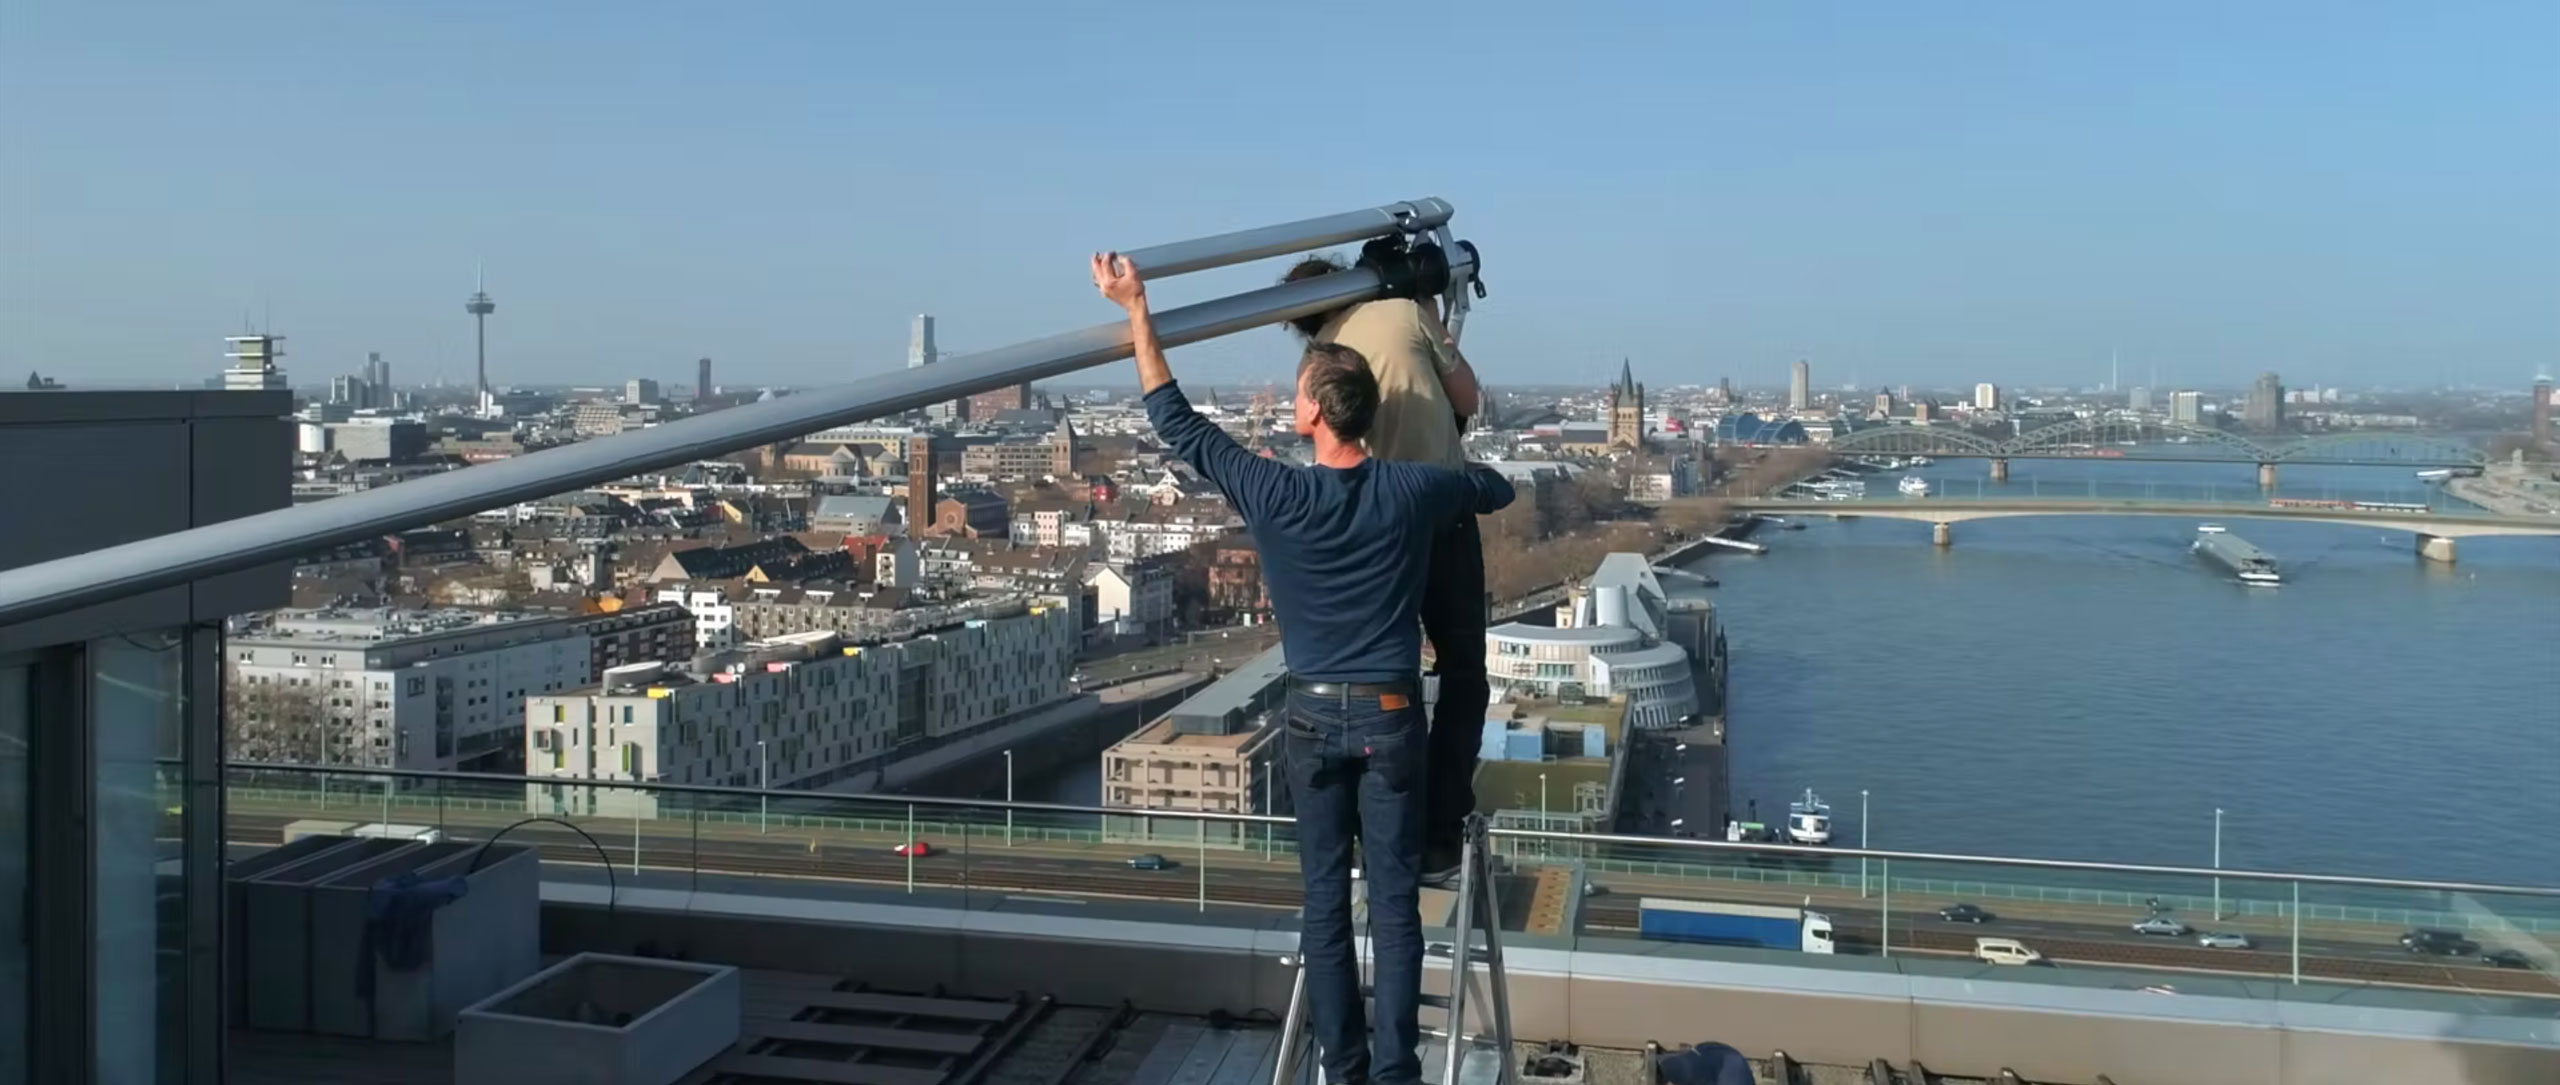 Titelbild des Videoclips zur Installation von zwei Sonnensegeln durch volkerweissauf dem Kranhaus Nord, Köln